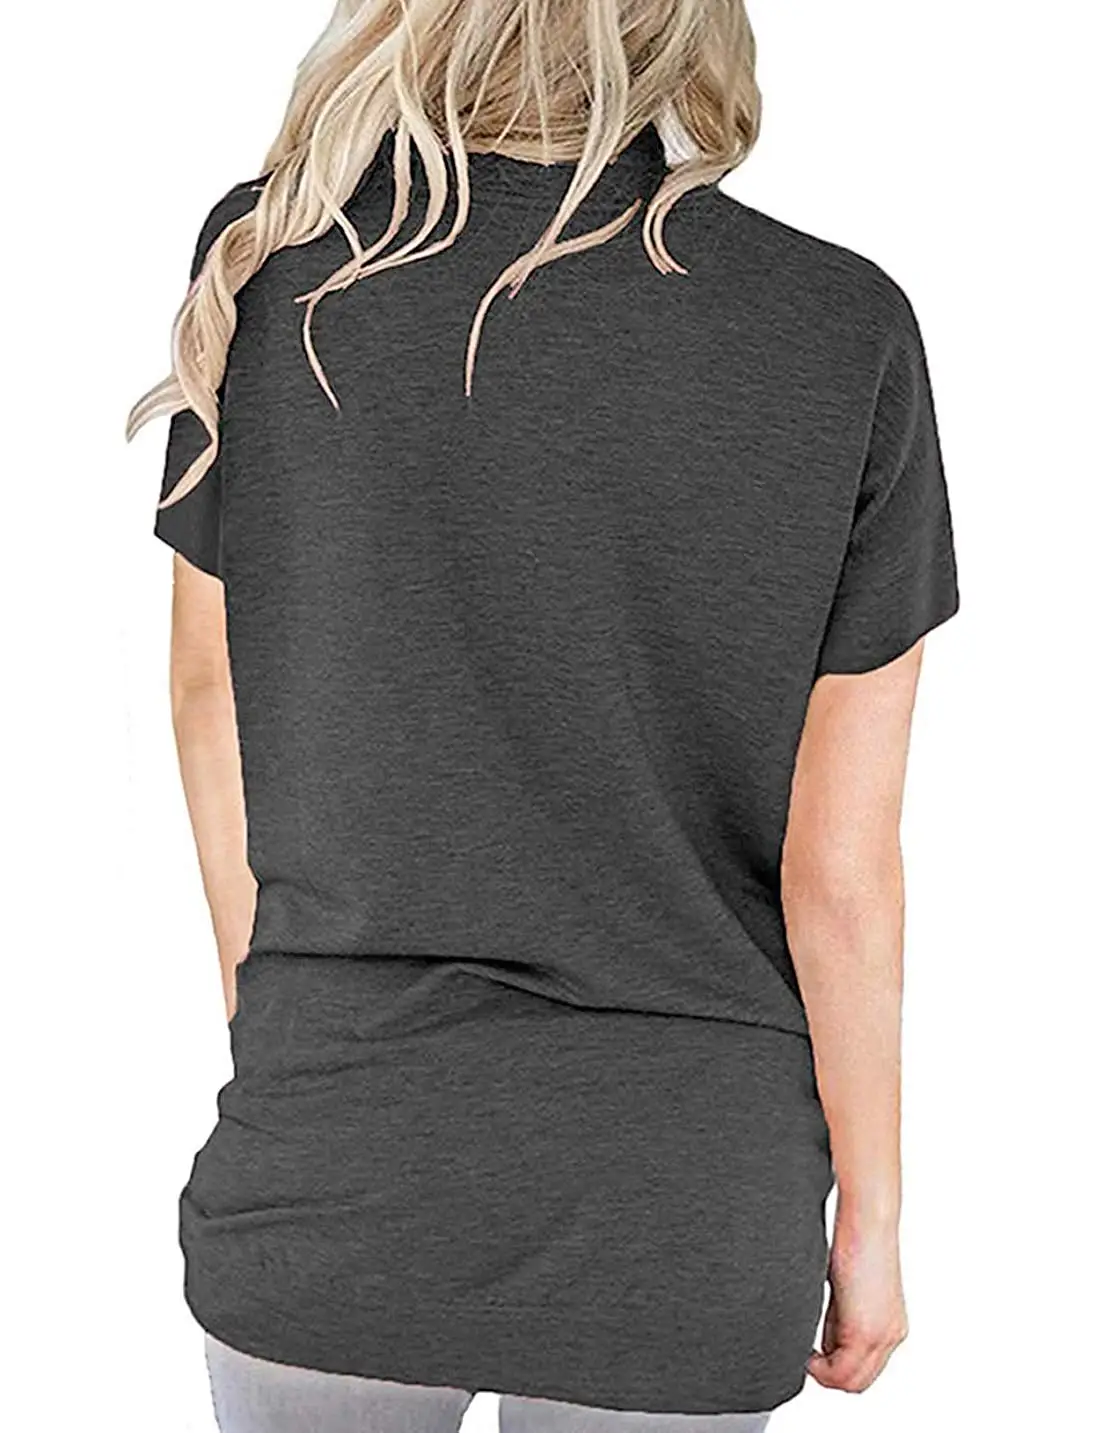 

Camiseta de mujer de Color sólido blusas de manga larga túnica blusas sueltas sudadera cómoda